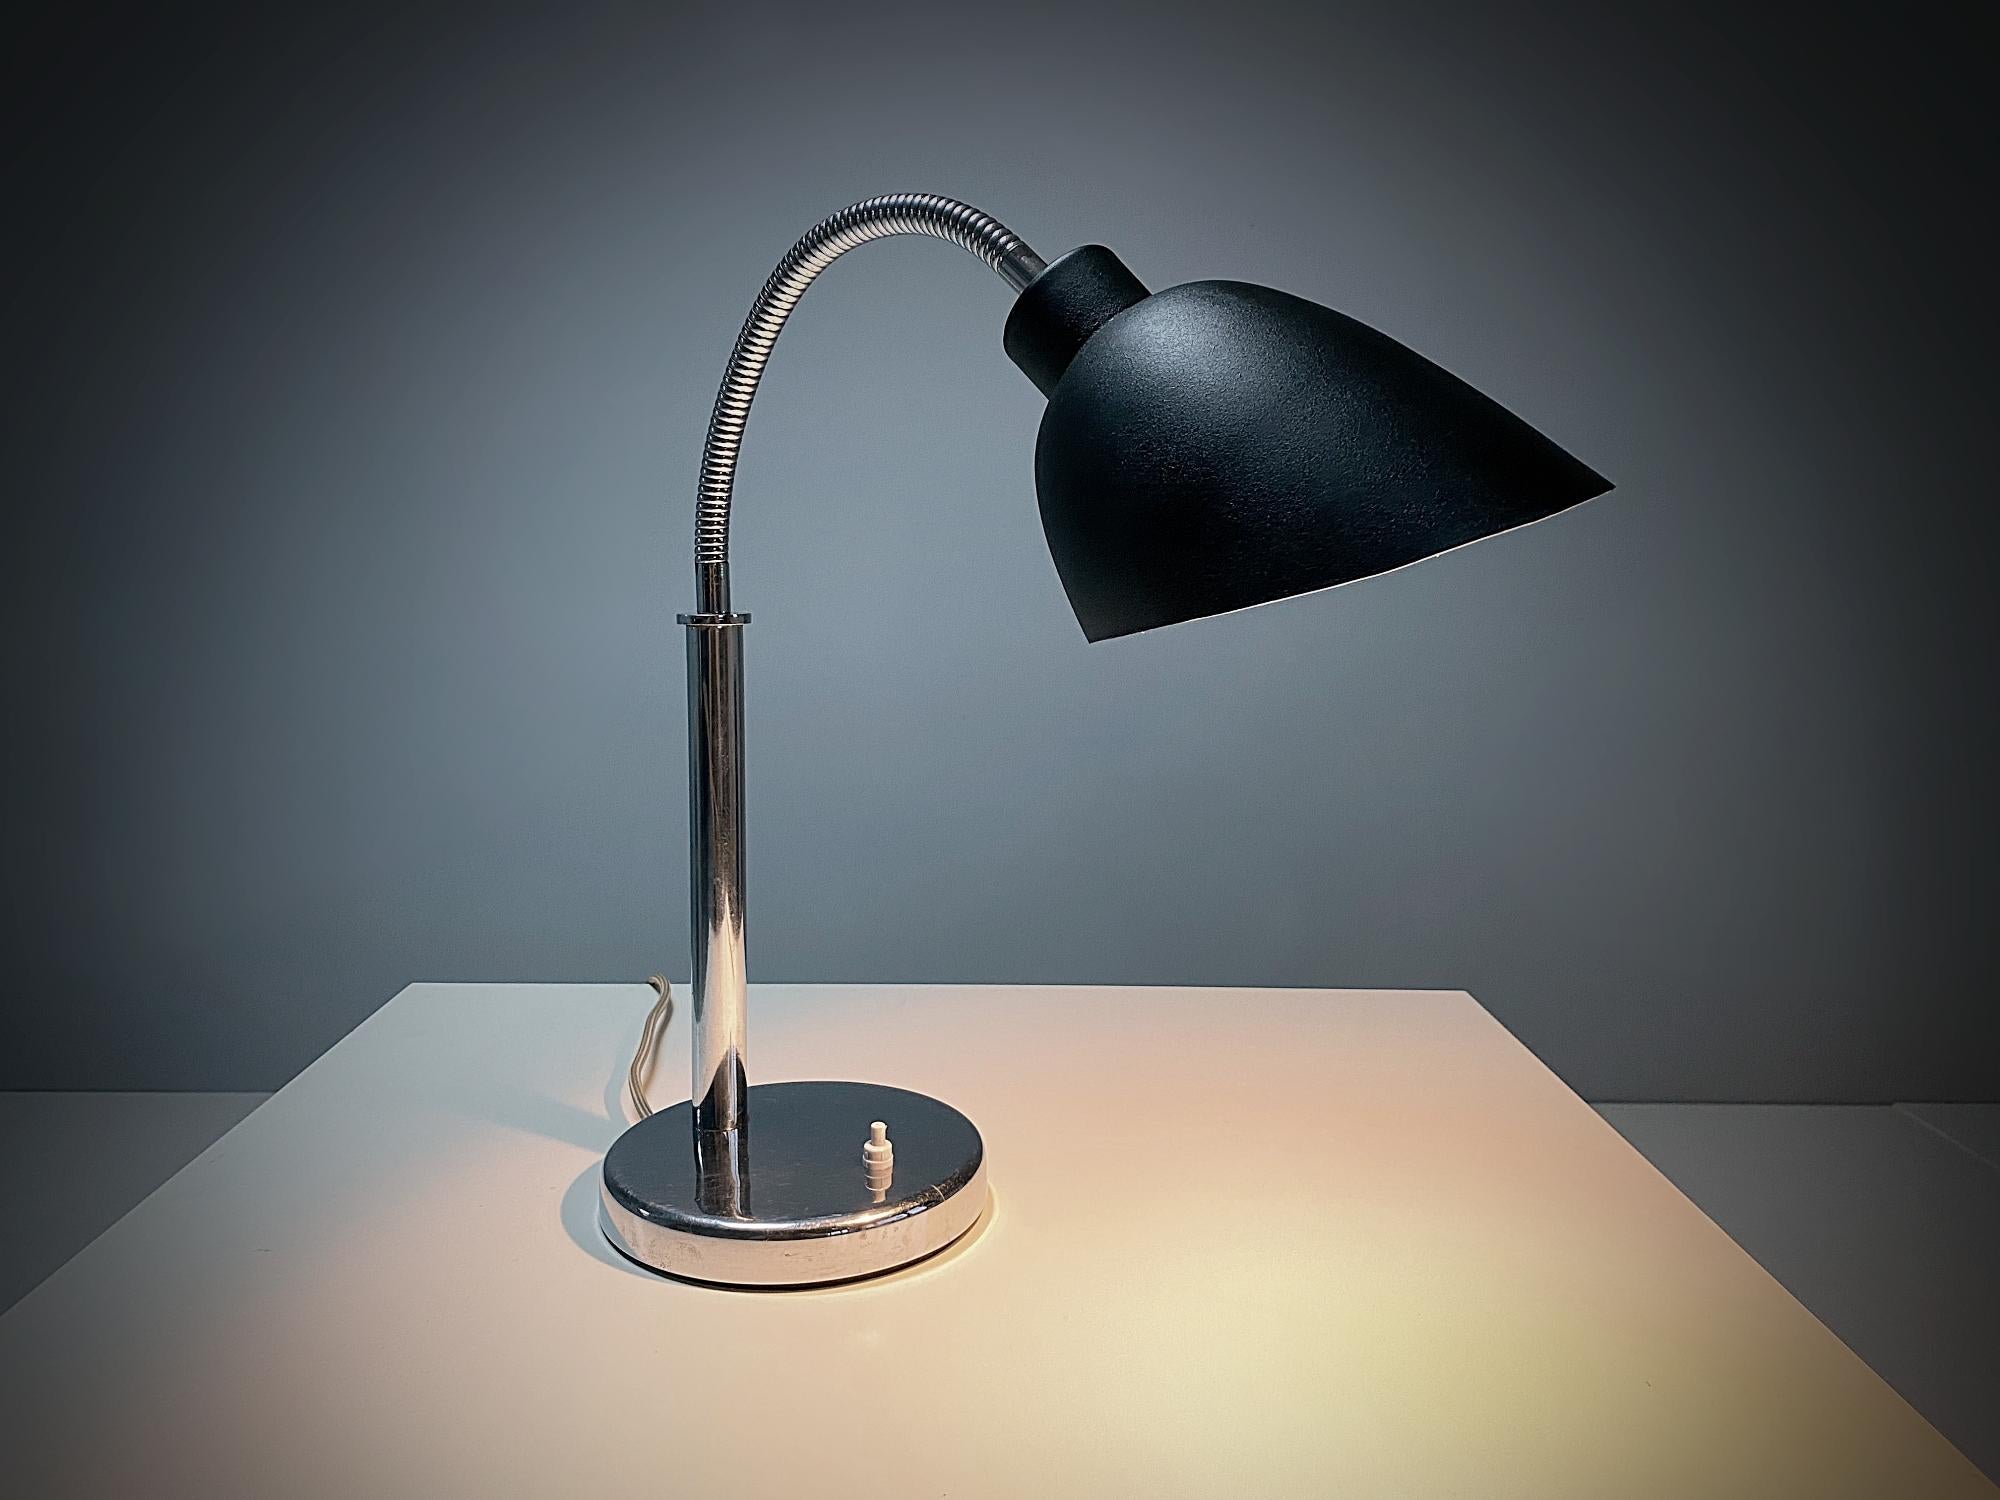 Importante lampe de table moderniste Arne Jacobsen AJ 8 en laiton/alliage chromé et laqué noir, fabriquée dans les années 1920, Danemark. Il s'agit de la première série de lampes qu'Arne Jacobsen a conçue dans les années 1920. Avec son design